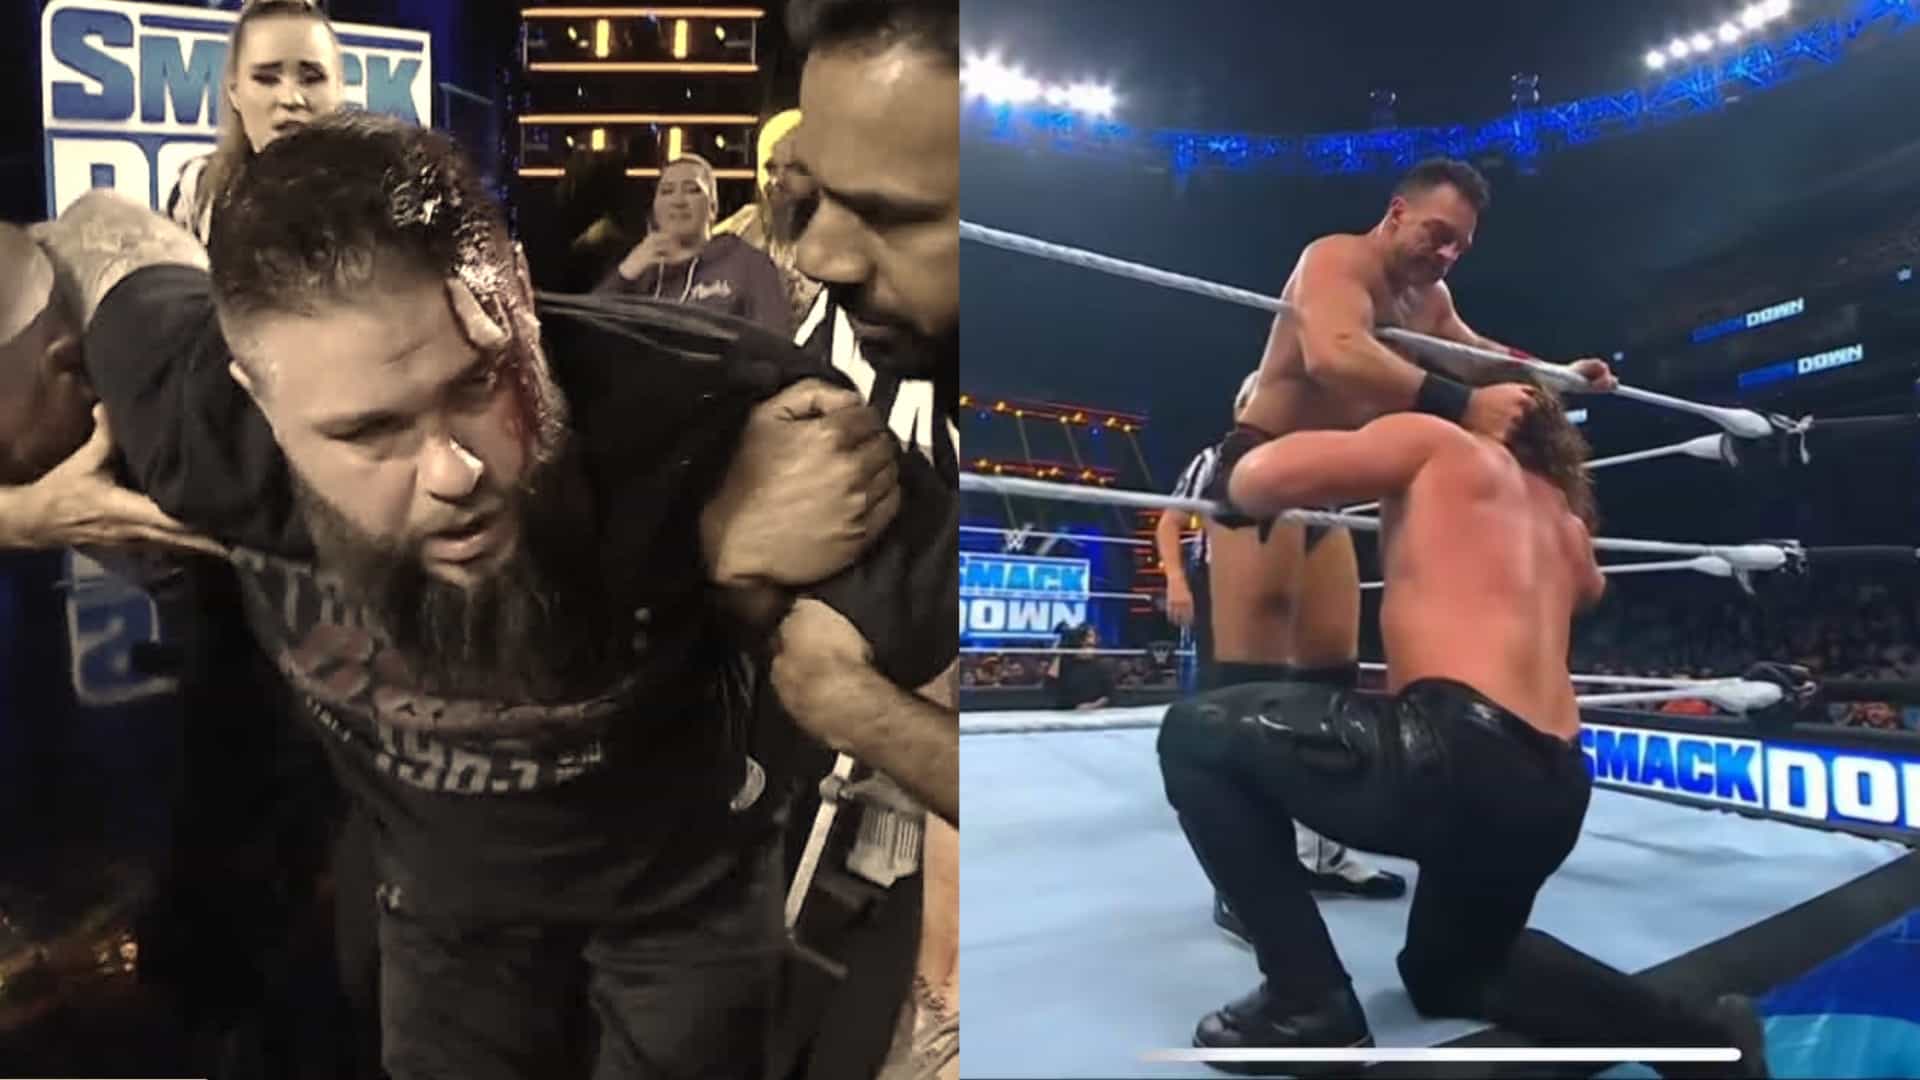 Reporte WWE Smackdown 4/19 – AJ Styles y LA Knight se pelean por puesto de retador #1; Kevin Owens masacrado